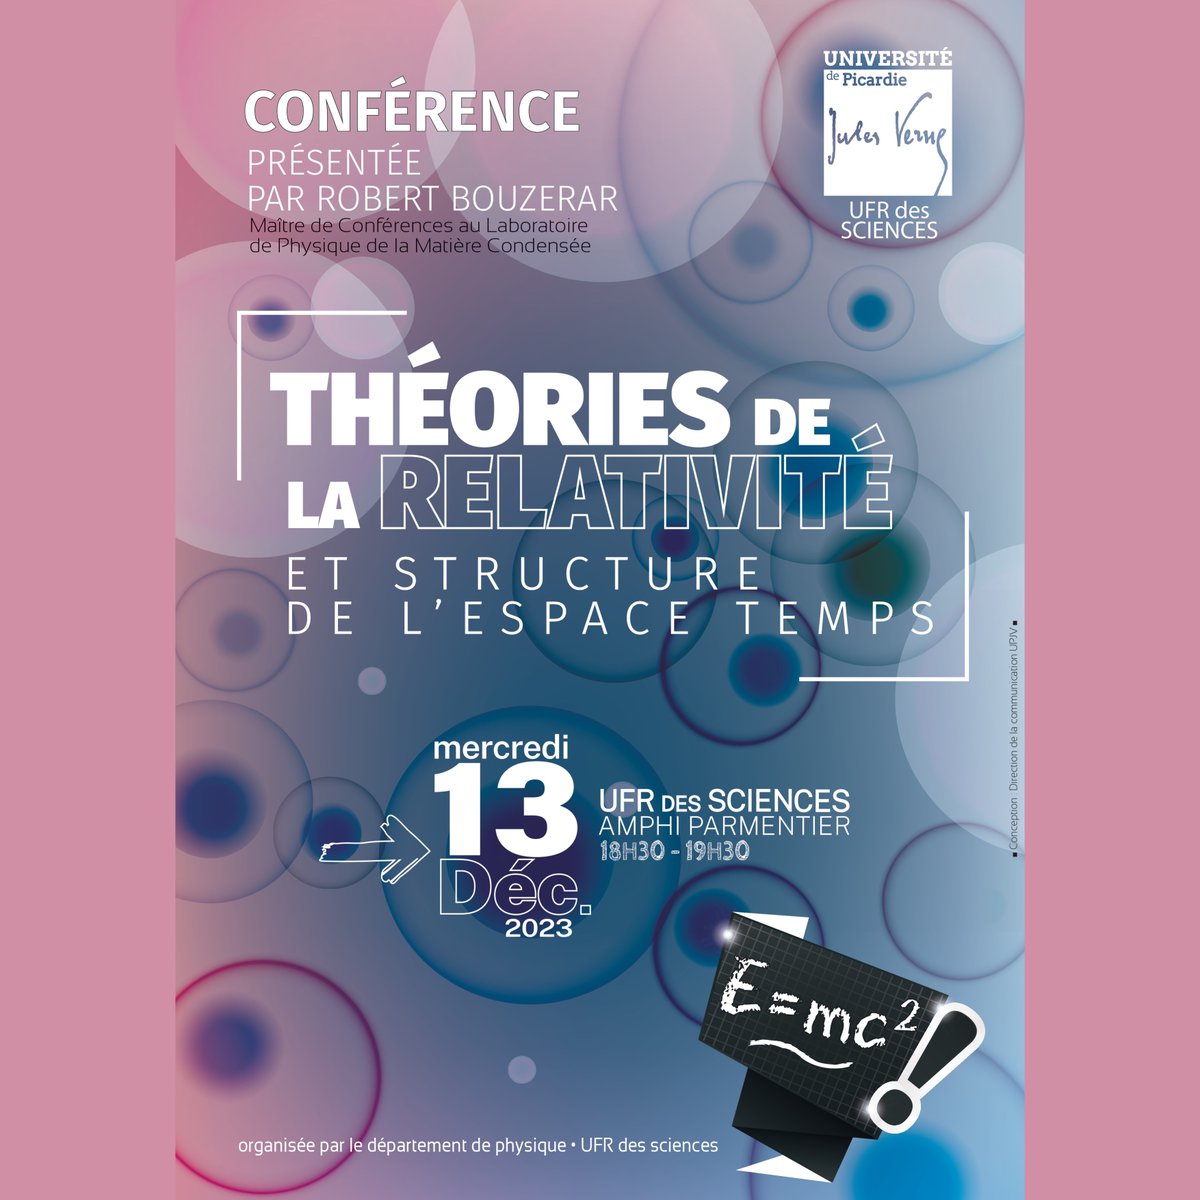 Dans le cadre de l'Année de la physique, l'UFR des Sciences de l'#UPJV organise une #conférence : 'Théories de la relativité et structure de l'espace temps' 📆 13/12/23 🕖 18h30-19h30 📍 UFR des Sciences (Amiens) @franceuniv - @cnrs - @education_gouv - @cea_officiel